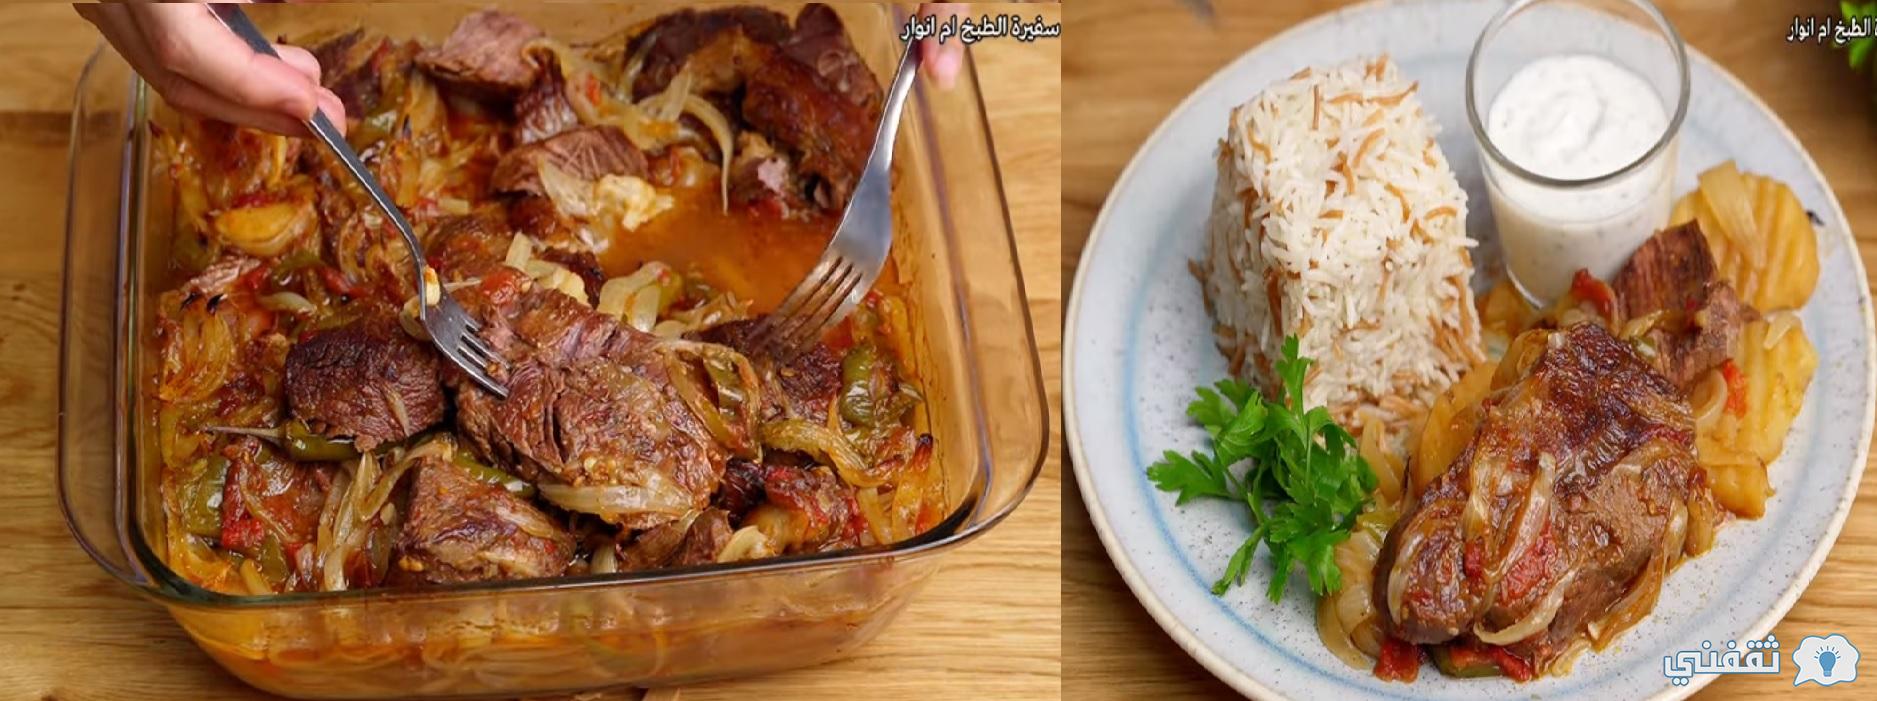 طريقة عمل طاجن لحم بالبصل المحمر بطعم رهيب من وصفات العيد